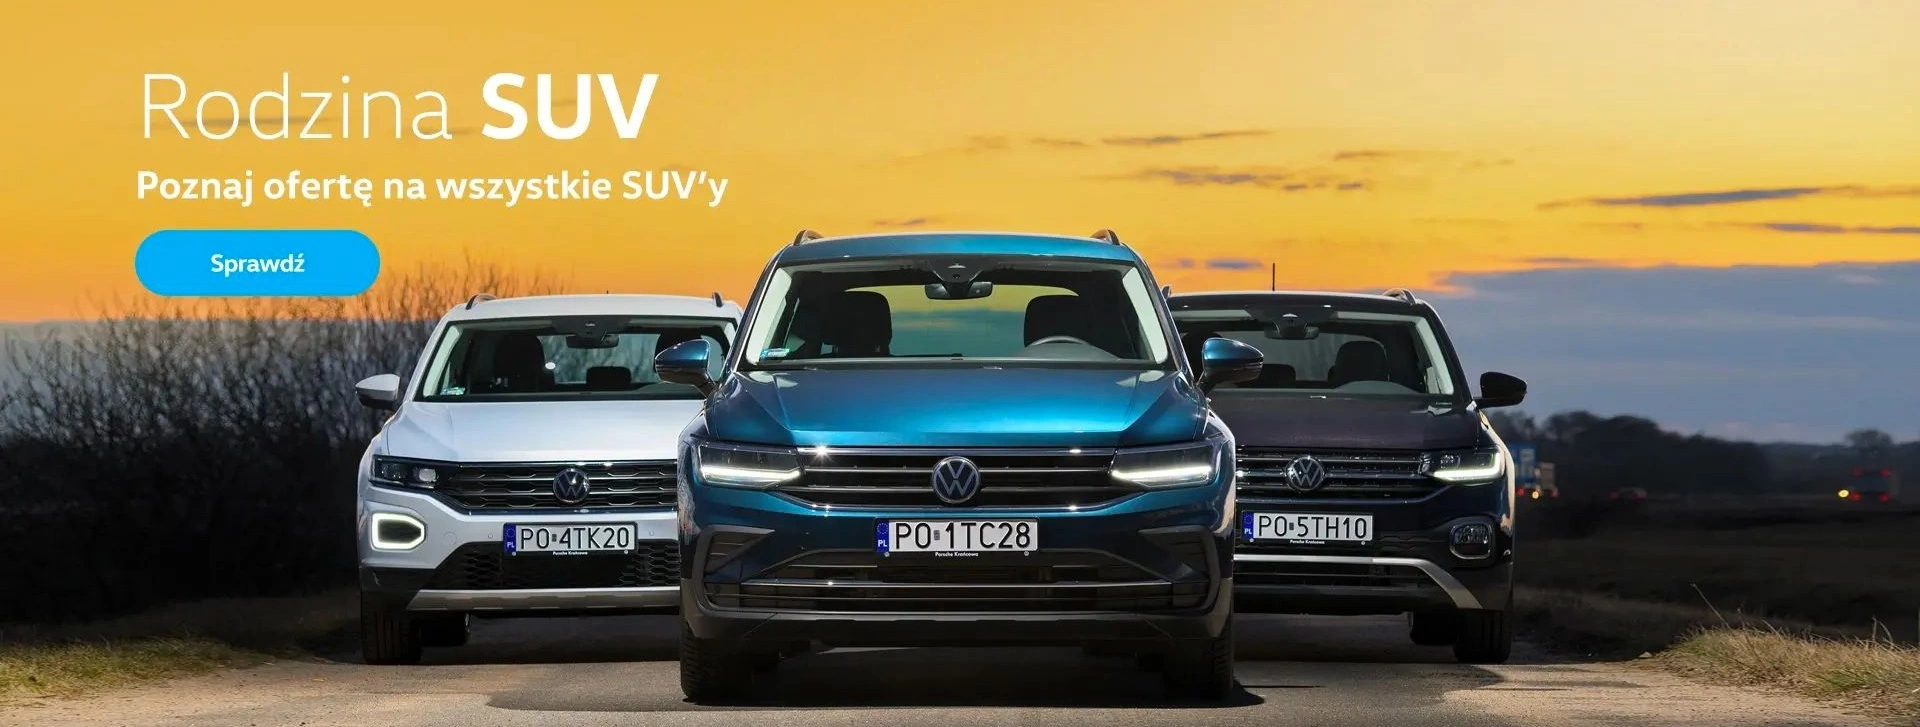 Poznaj ofertę na wszystkie SUV'y VW rocznik 2021